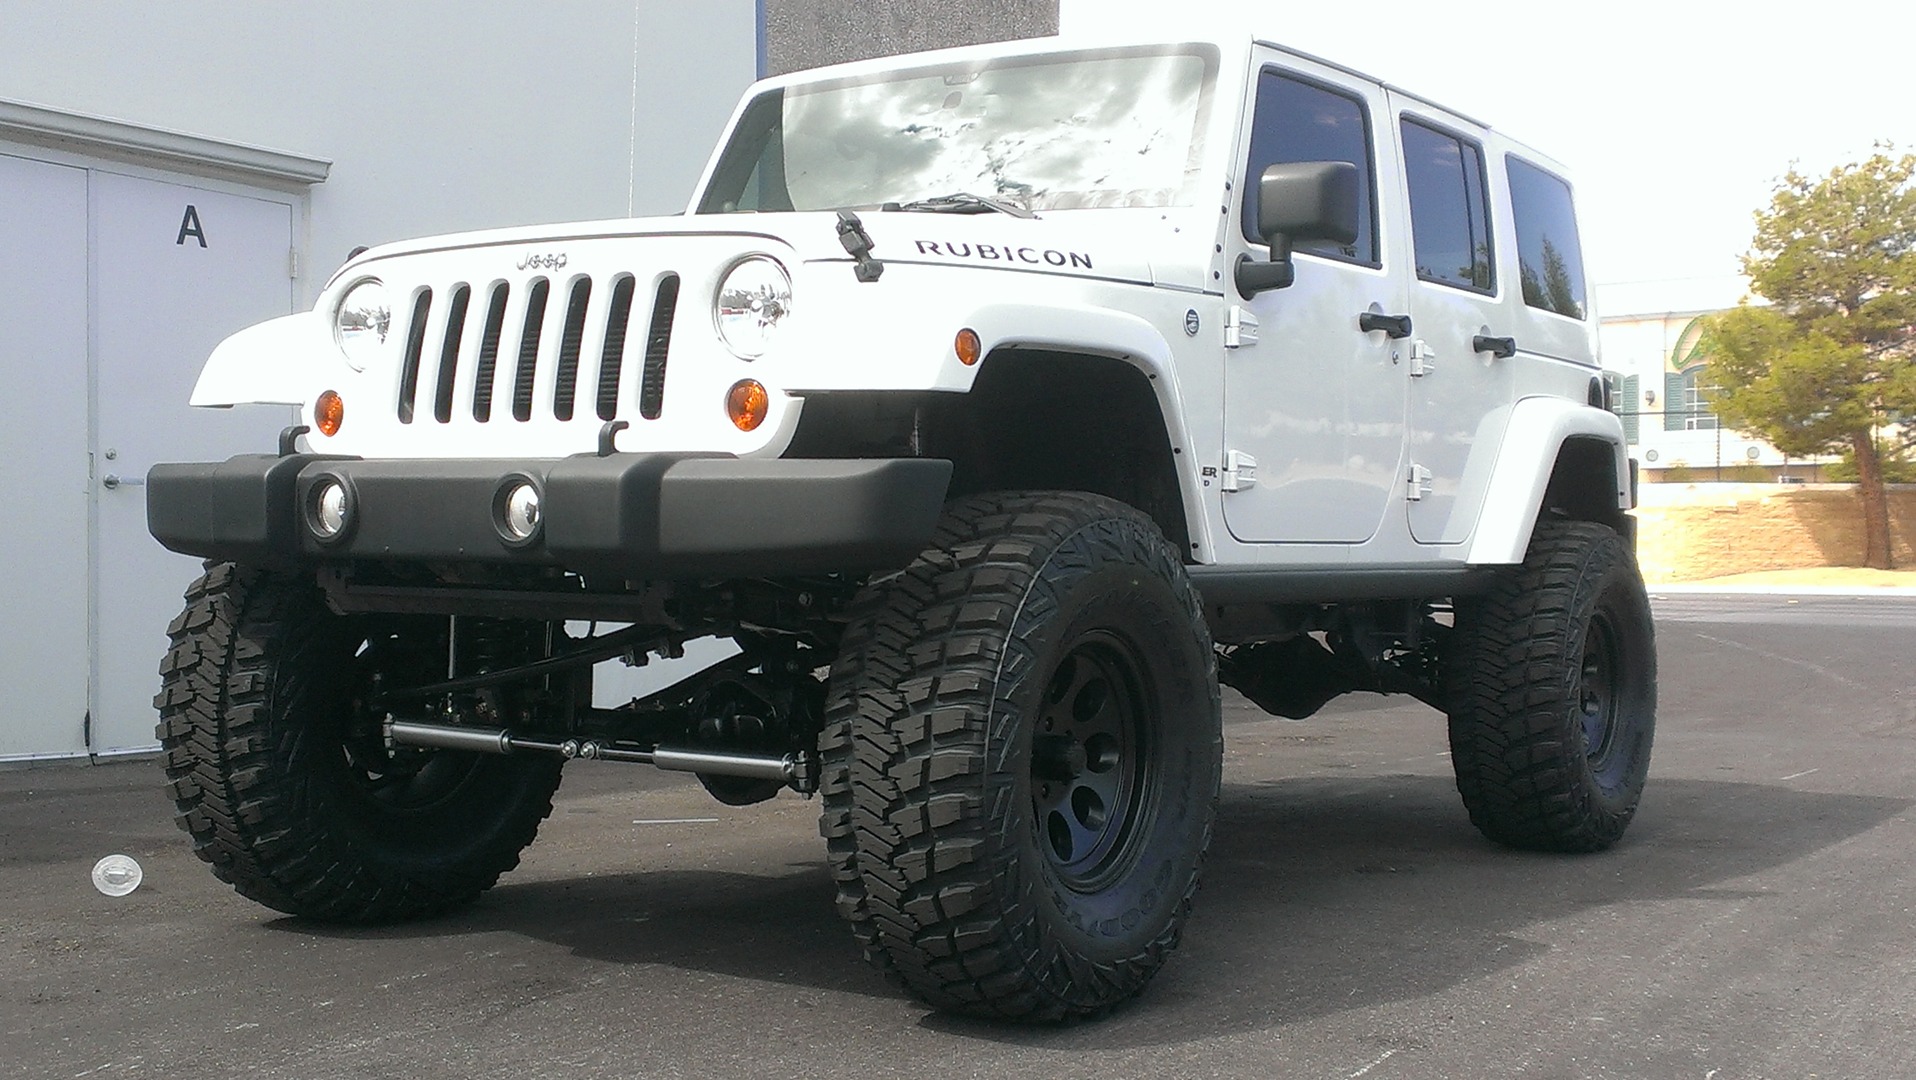 Total 66+ imagen 8 inch lift kit for jeep wrangler jk